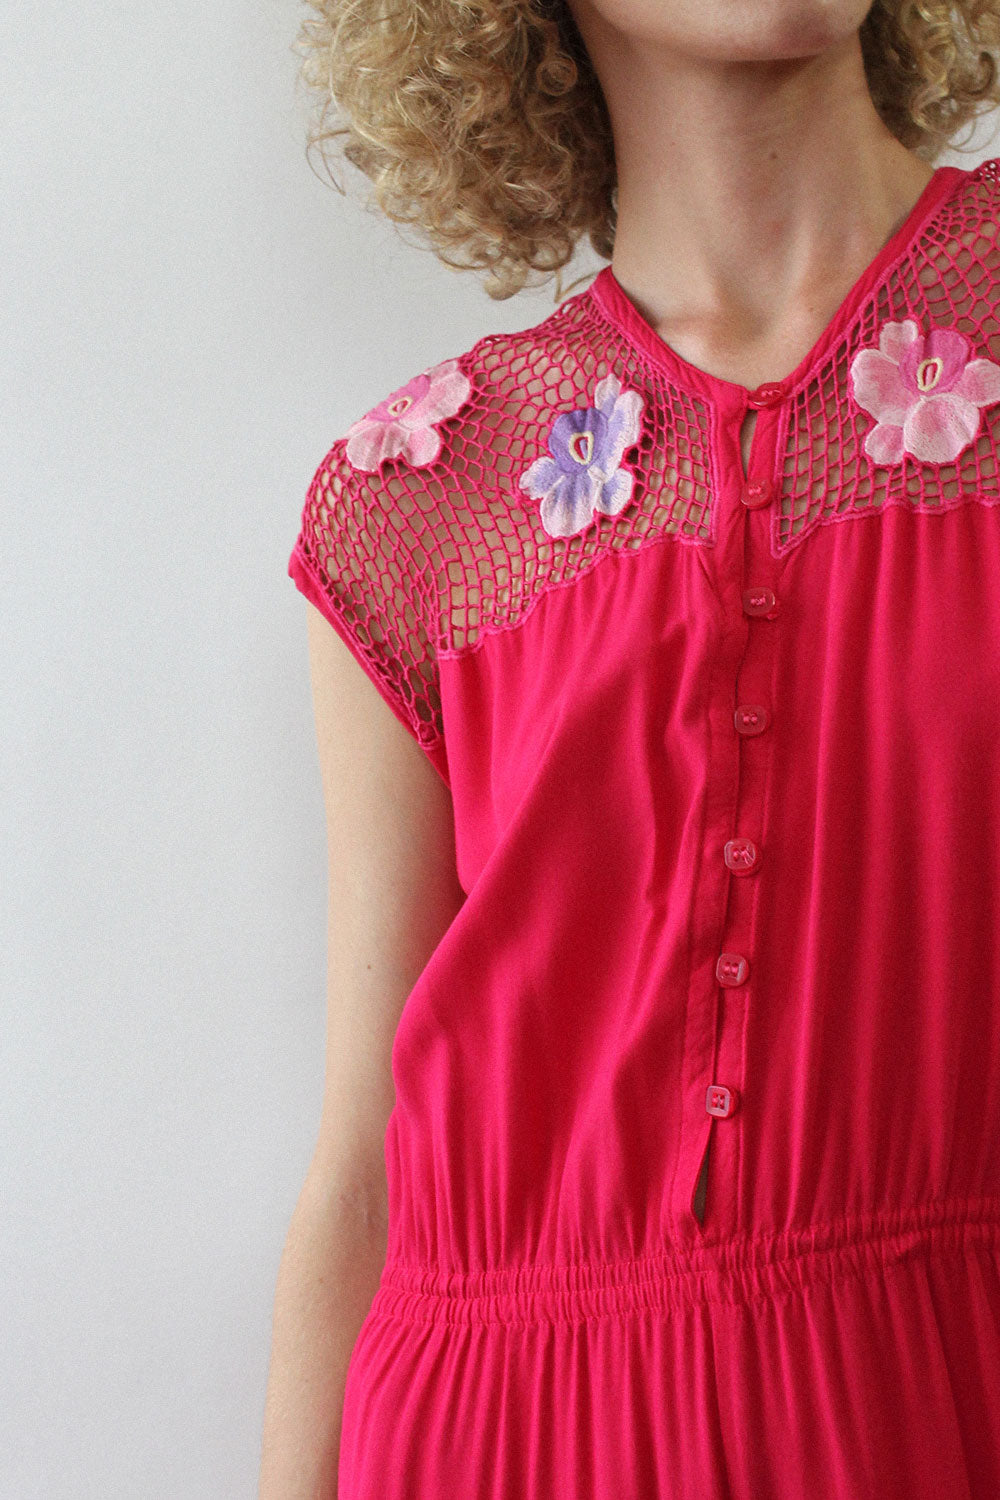 Hot Pink Bali Lace Jumpsuit M/L